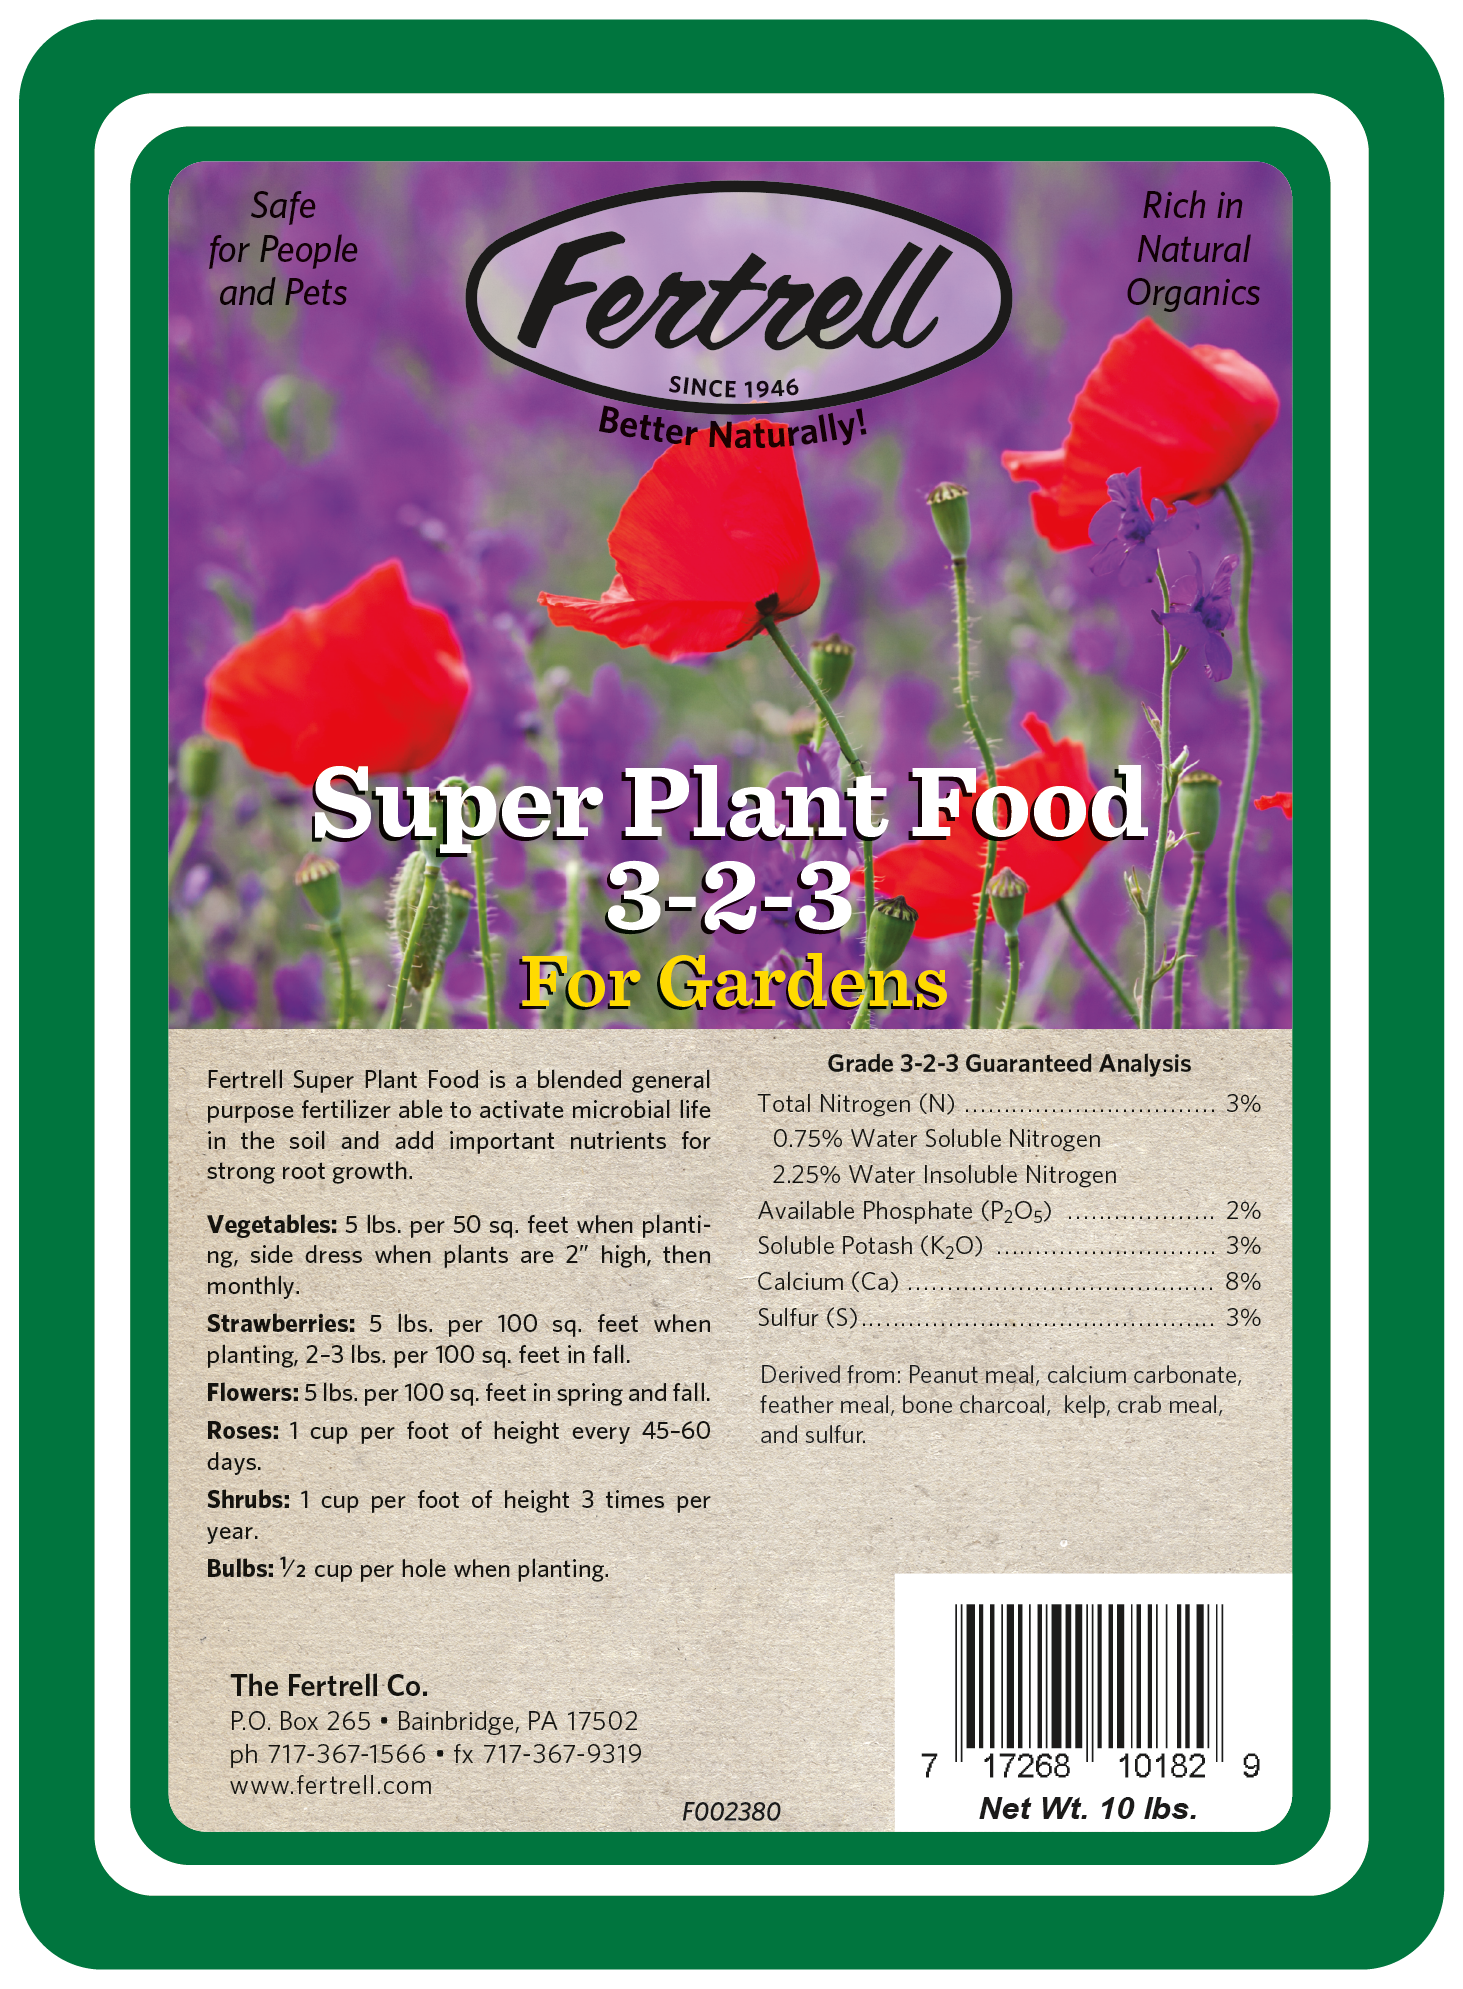 Super Plant Food 10 lb Organic Fertilizer